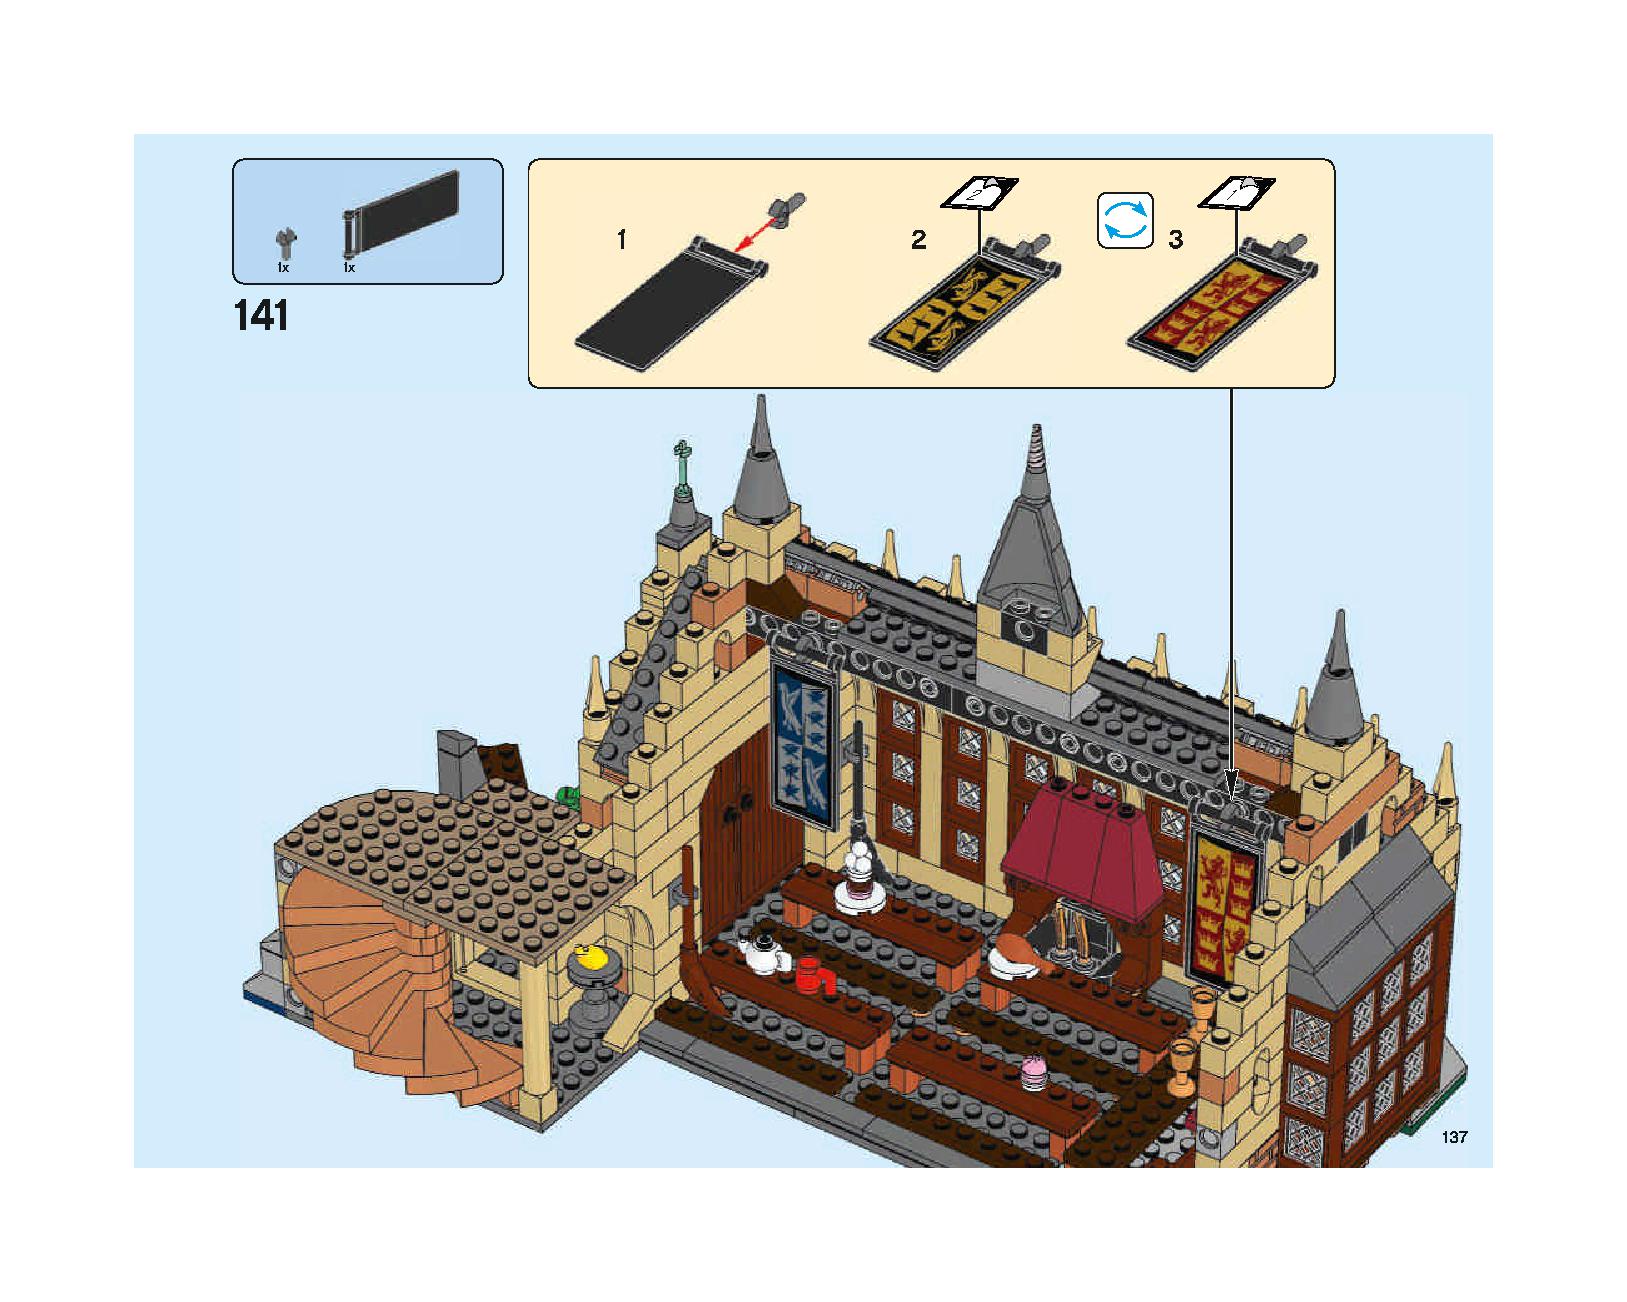 ホグワーツの大広間 75954 レゴの商品情報 レゴの説明書・組立方法 137 page